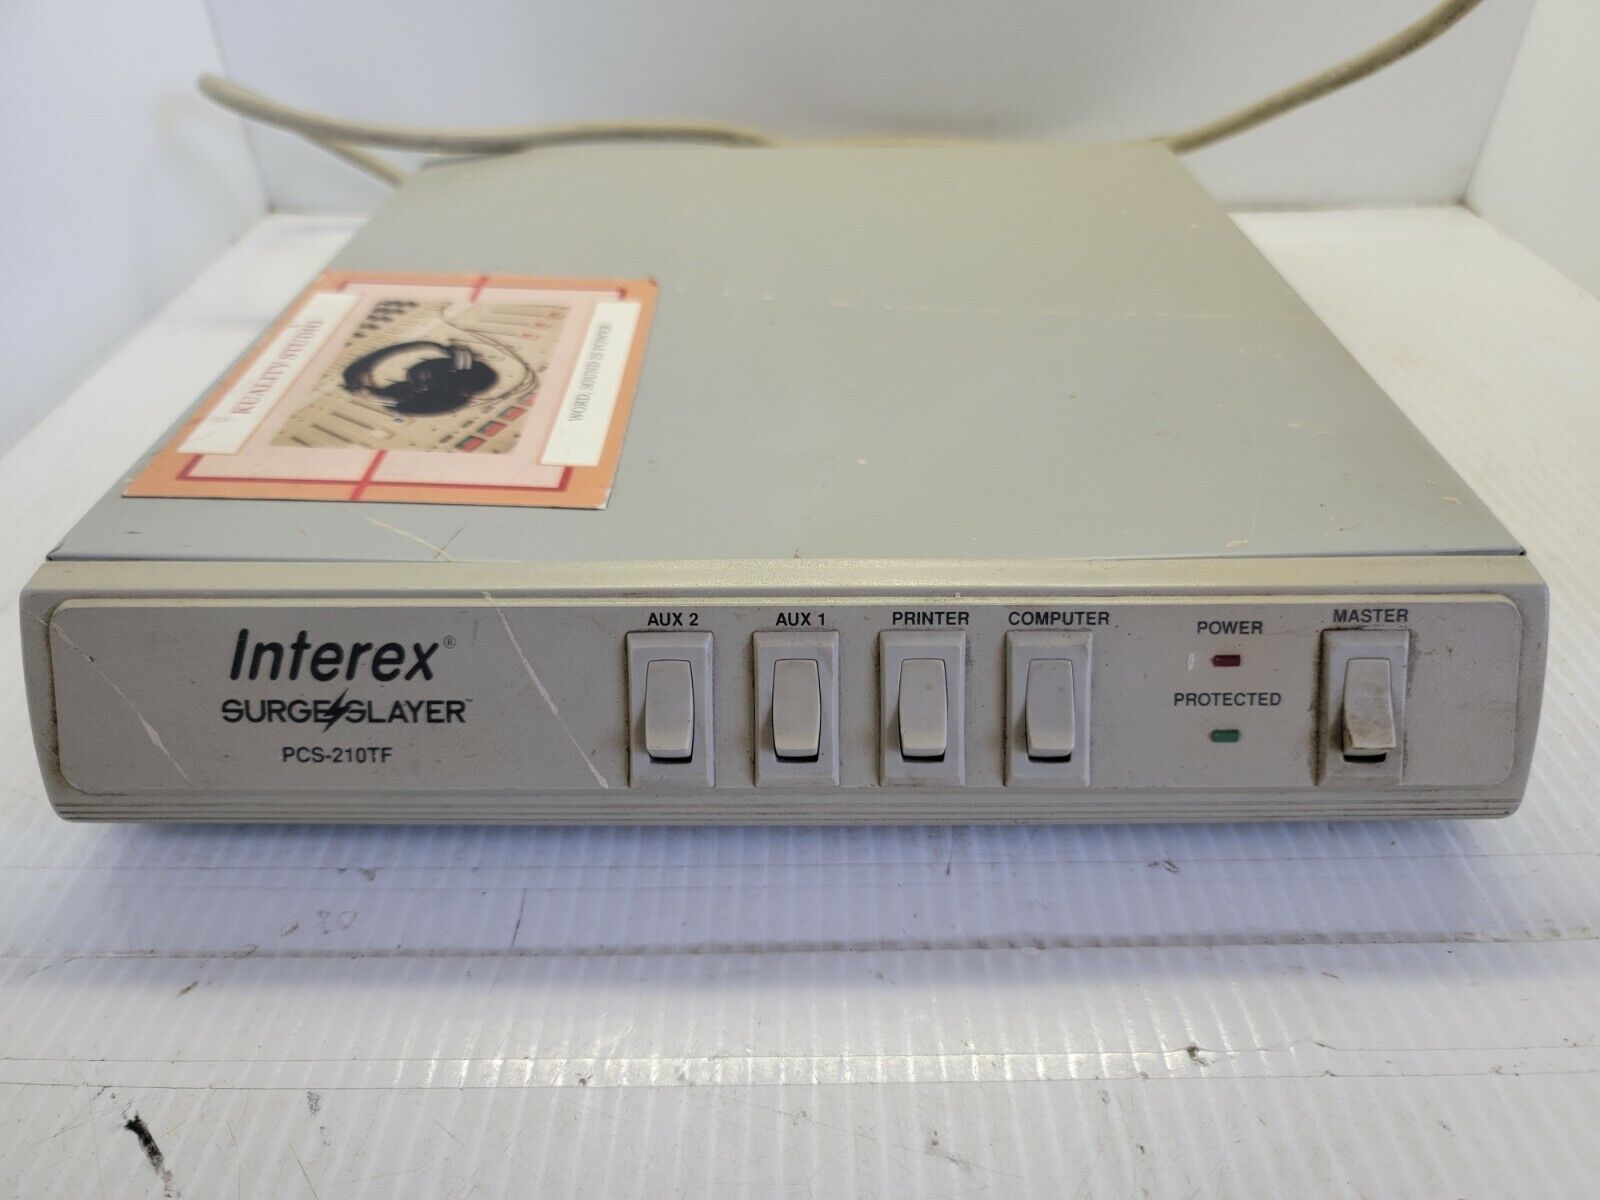 Interex PCS-210TF Surge Slayer 5 Outlet Power Transient Voltage Surge Suppressor